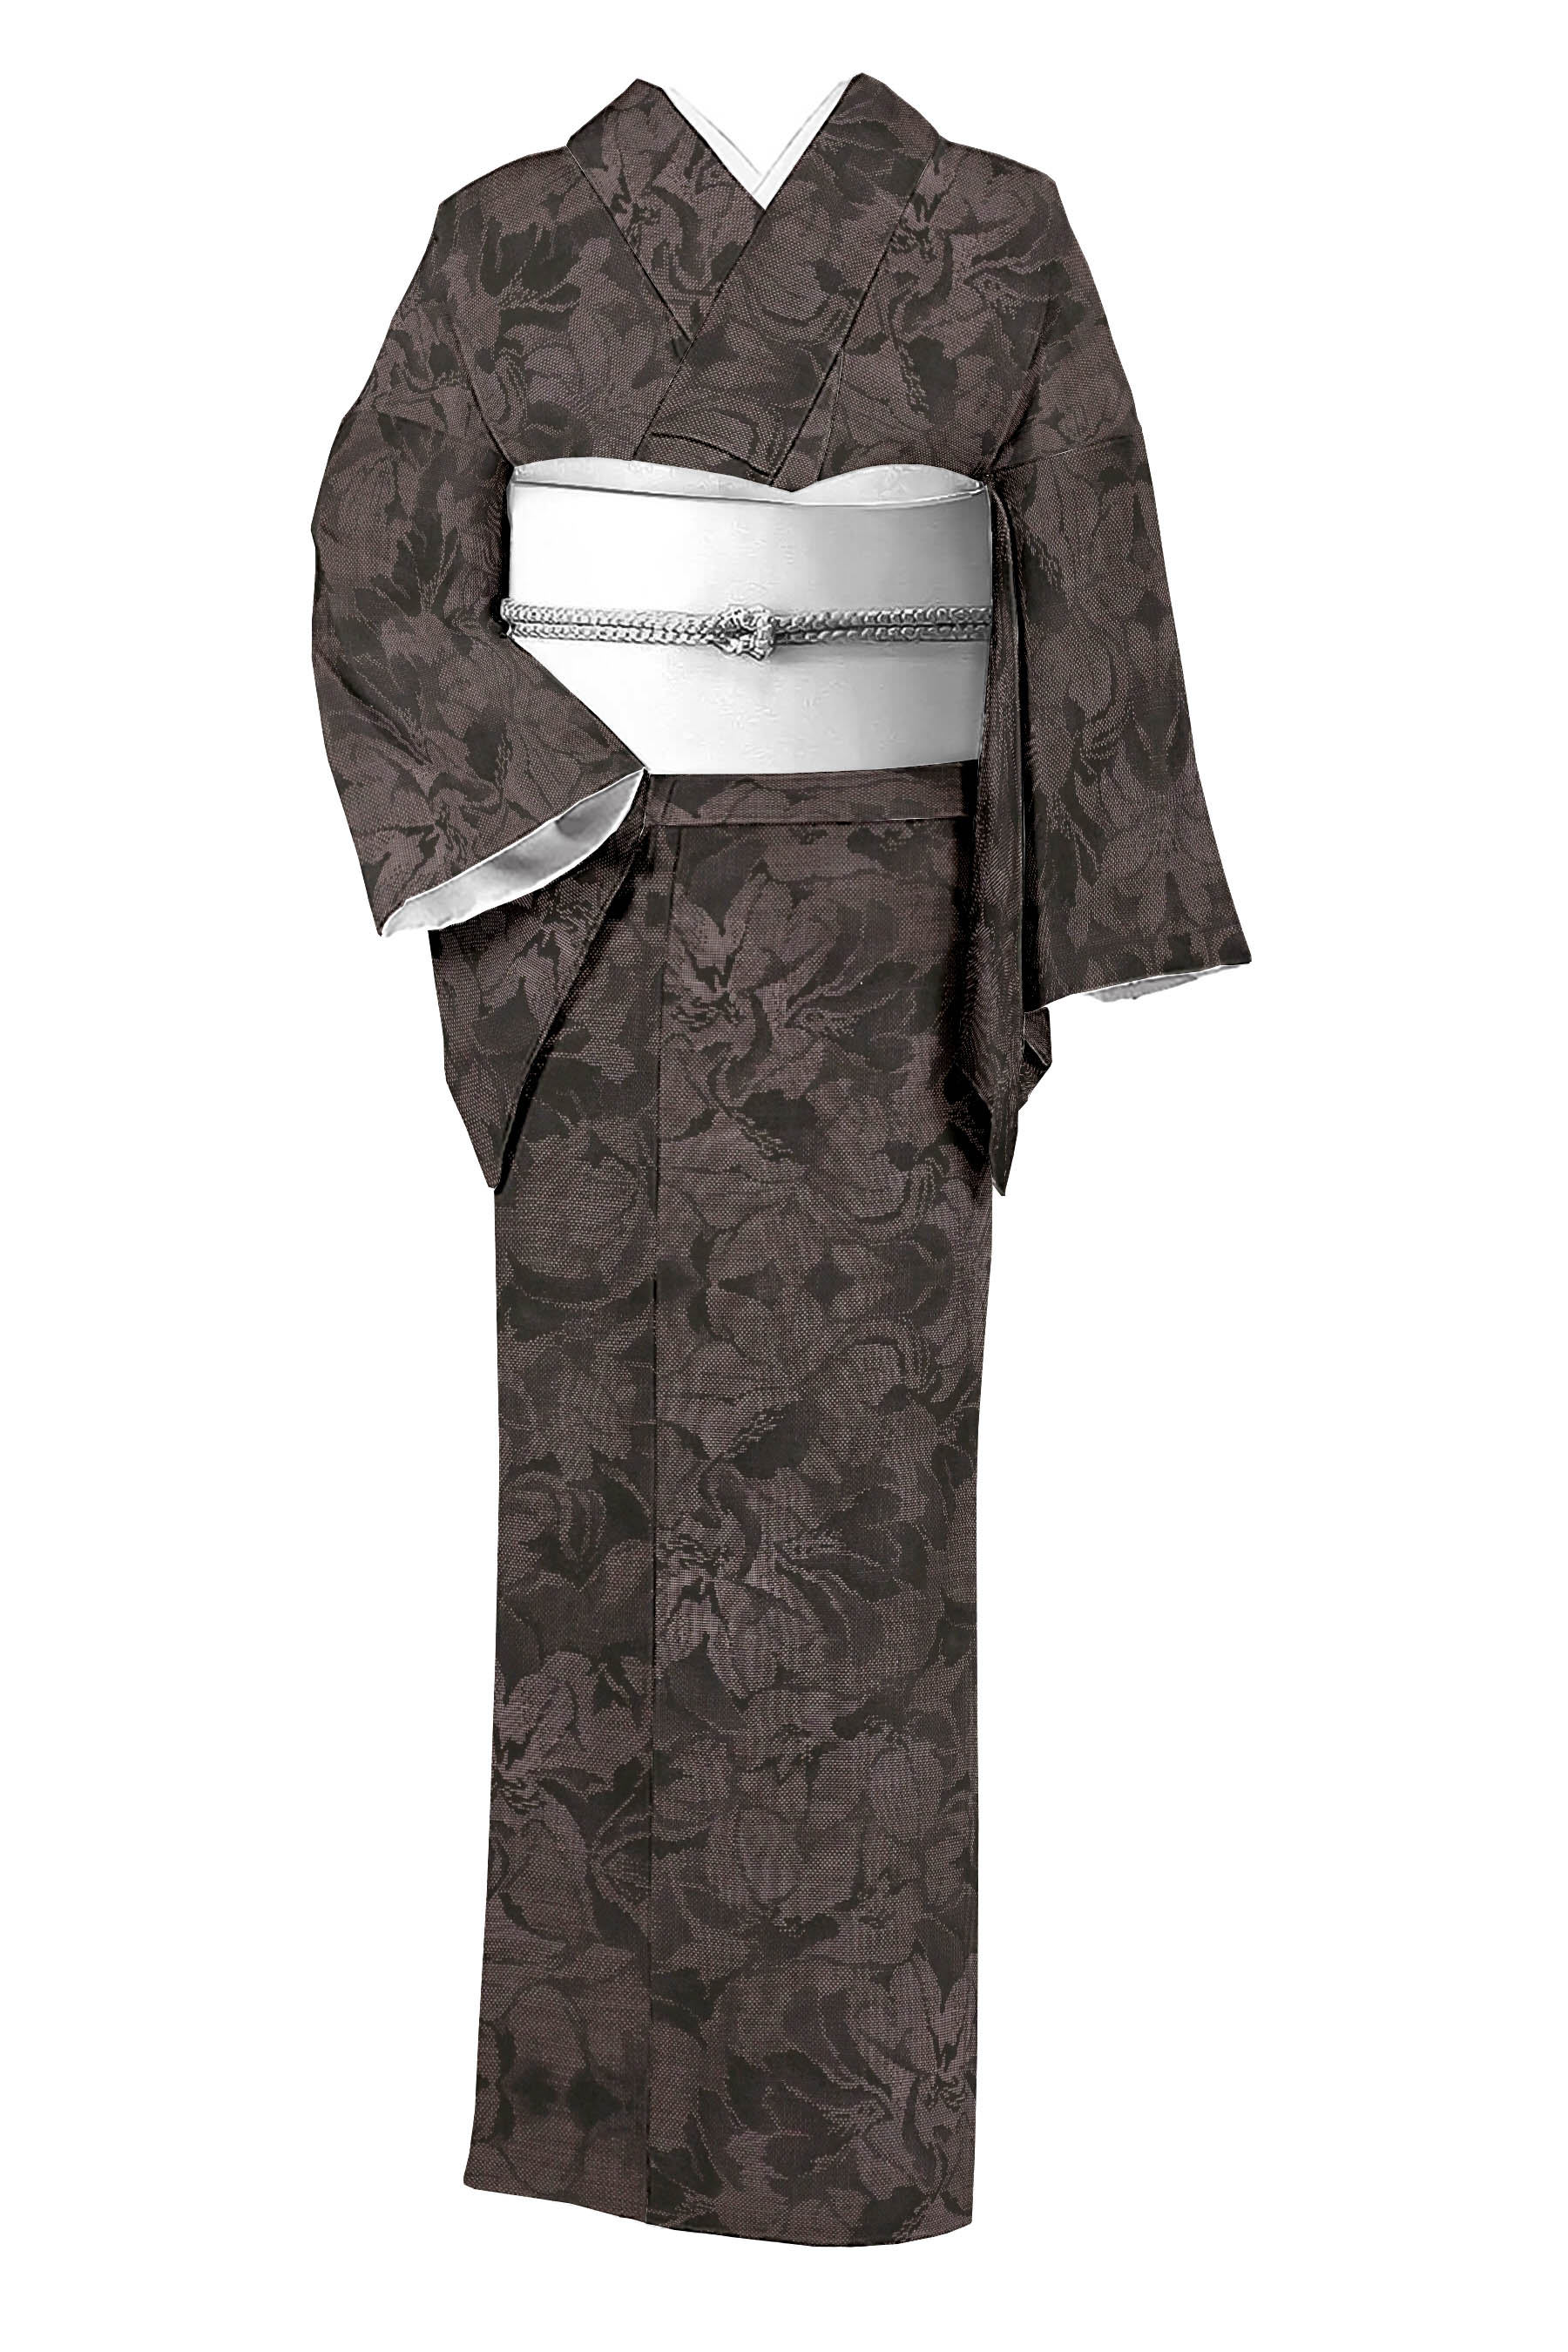 都喜ヱ門の着物・帯の一覧|京都きもの市場【日本最大級の着物通販サイト】